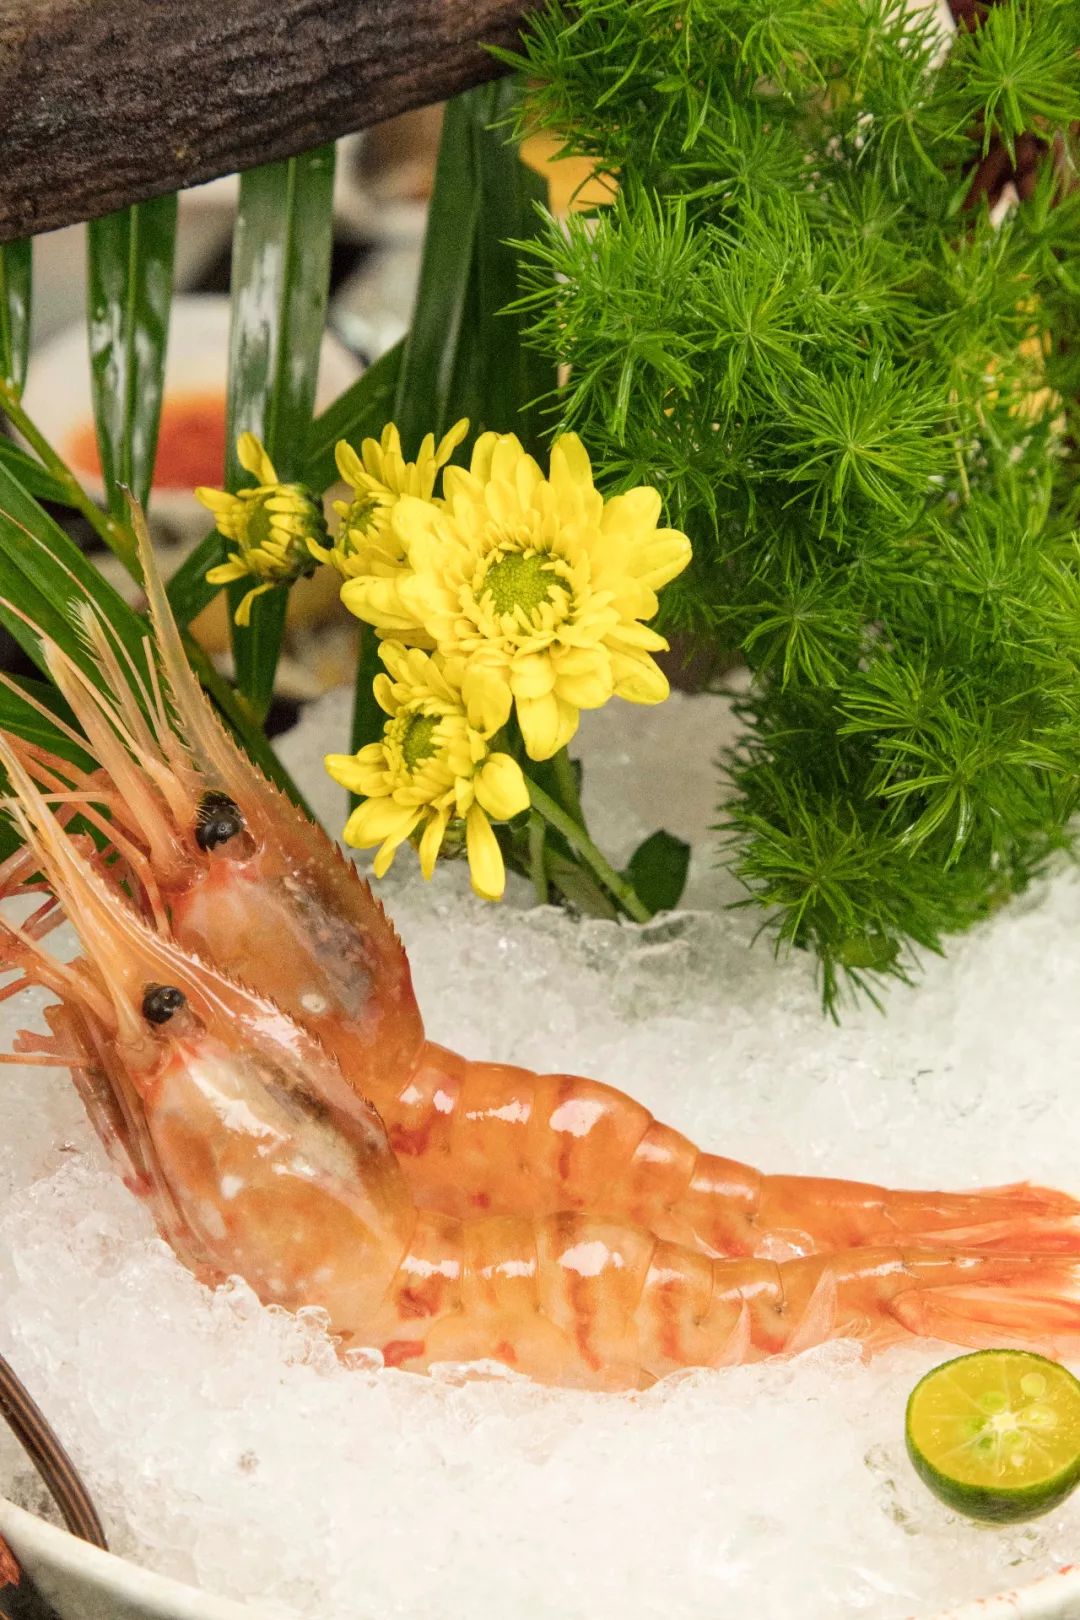 牡丹虾一定要多吃几颗才不算白来一般料理店吃不到这样好的翡翠螺肉质